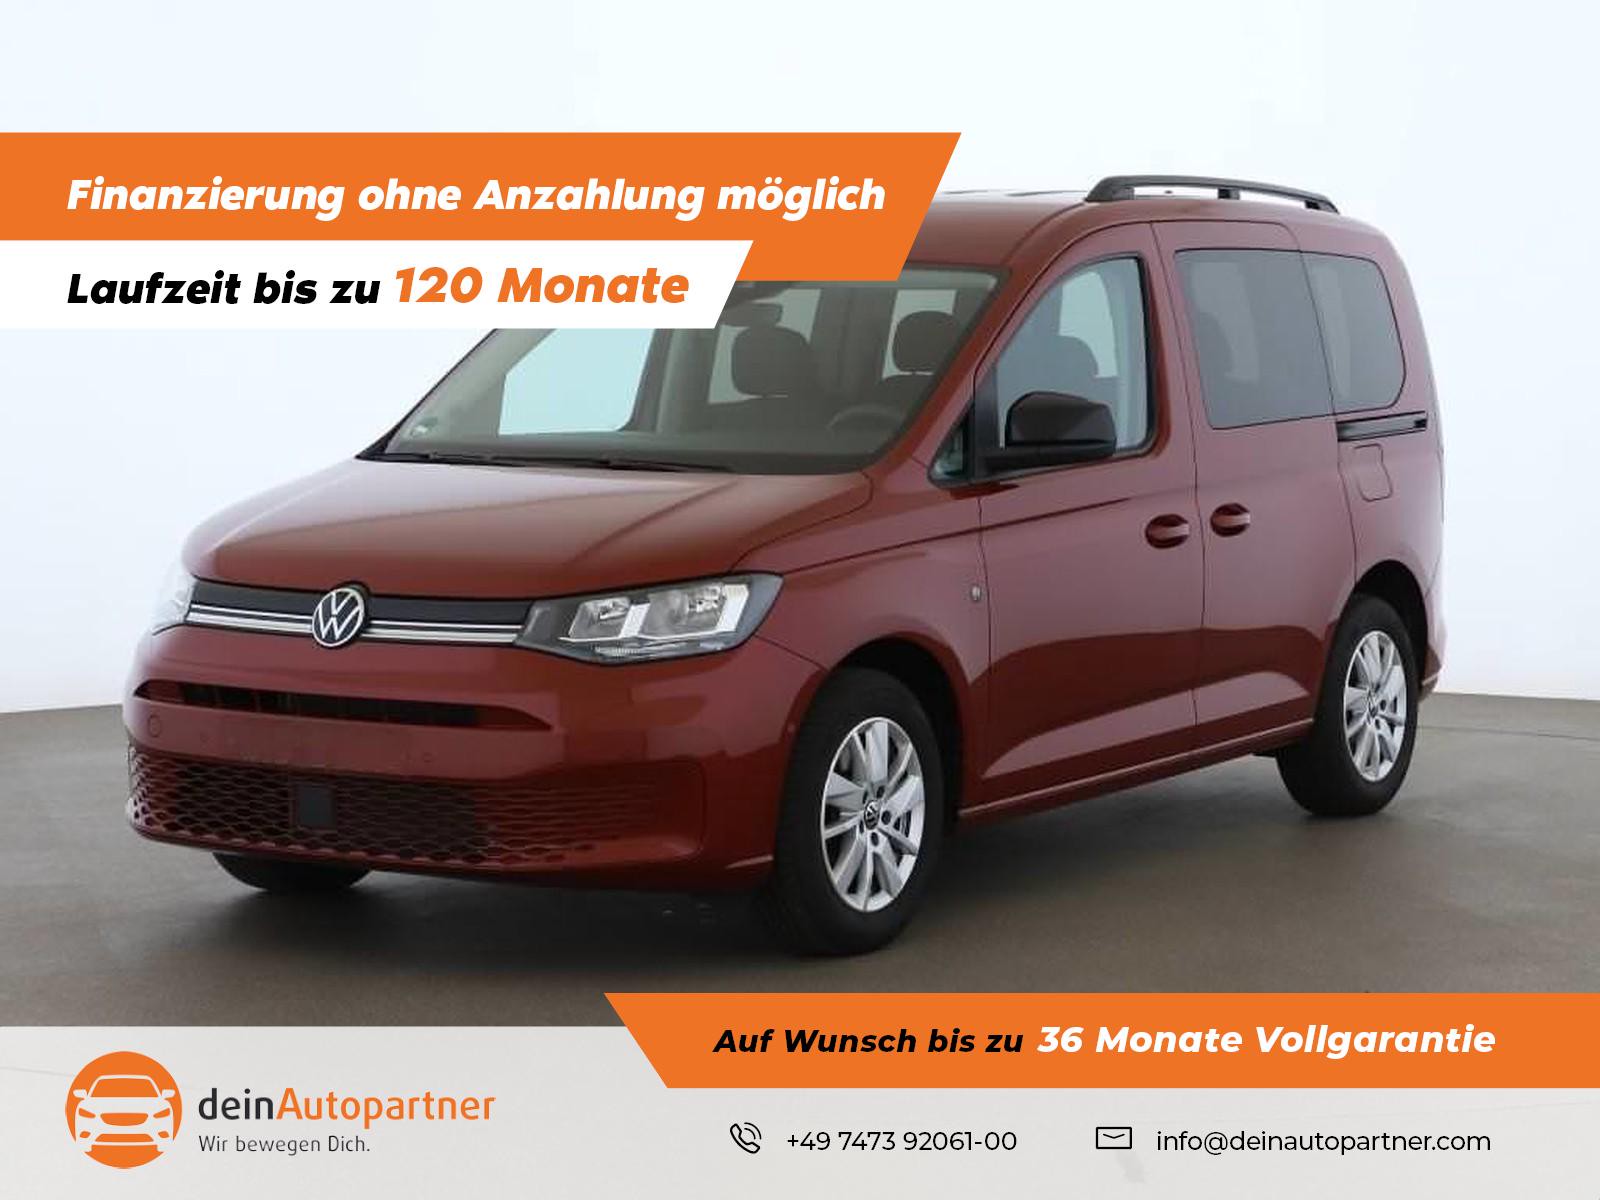 Volkswagen Caddy Life 1.5 TSI gebraucht kaufen in Mössingen Preis 28900 eur  - Int.Nr.: 1228